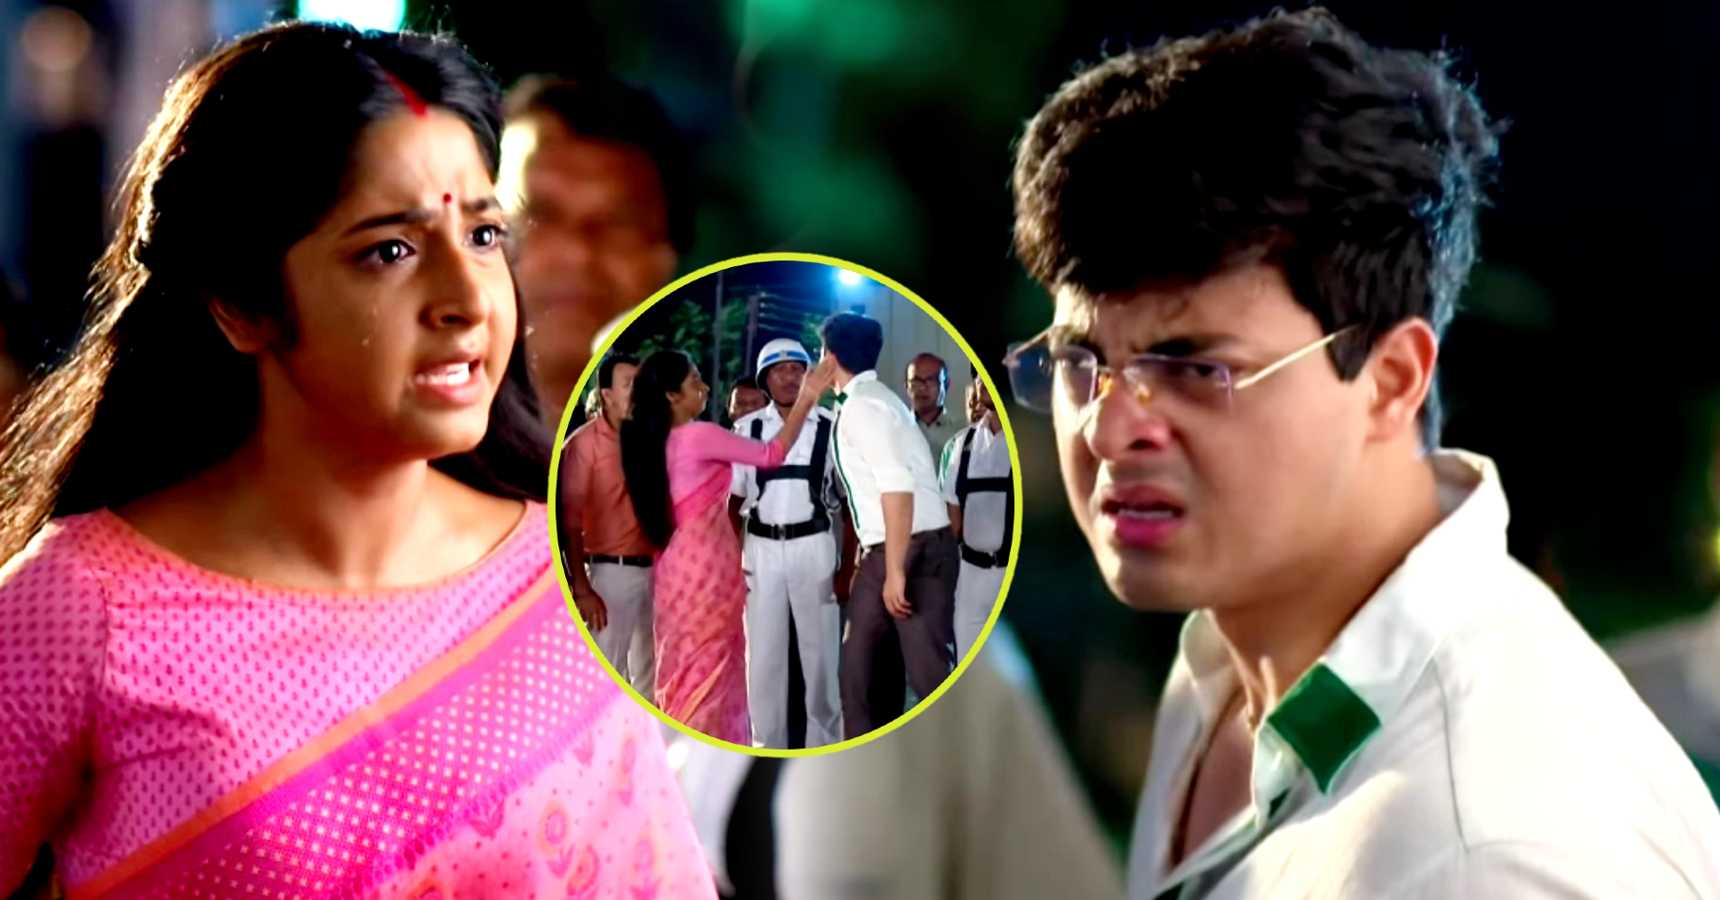 Anurager chhowa serial Deepa slaps Surjo upcoming episode reveal